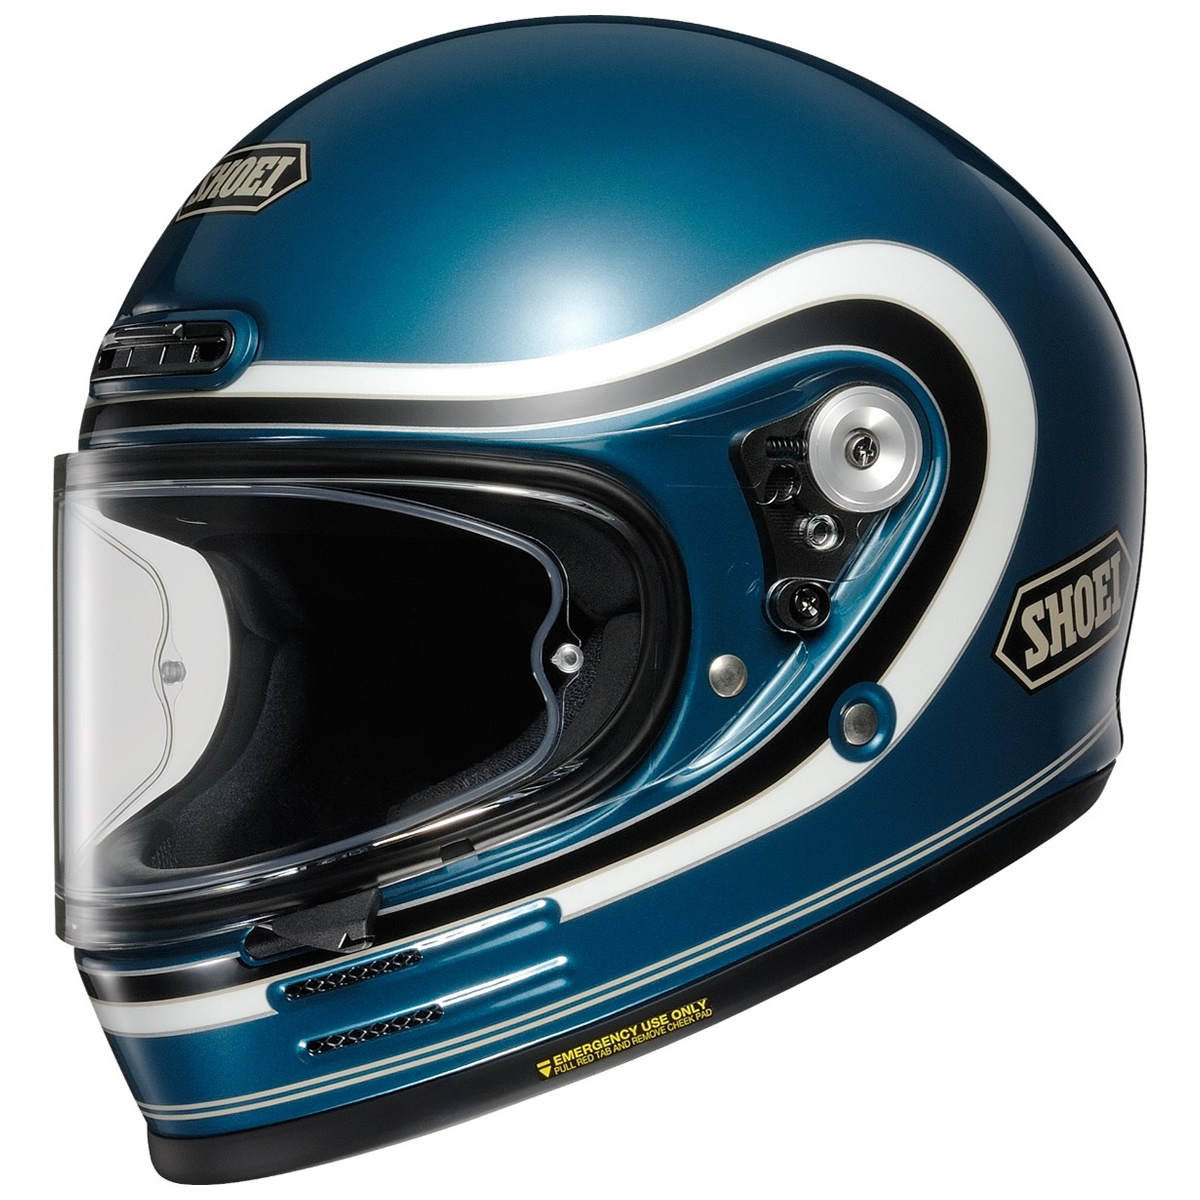 Shoei Helm Glamster 06 Bivouac, blau-weiß-schwarz